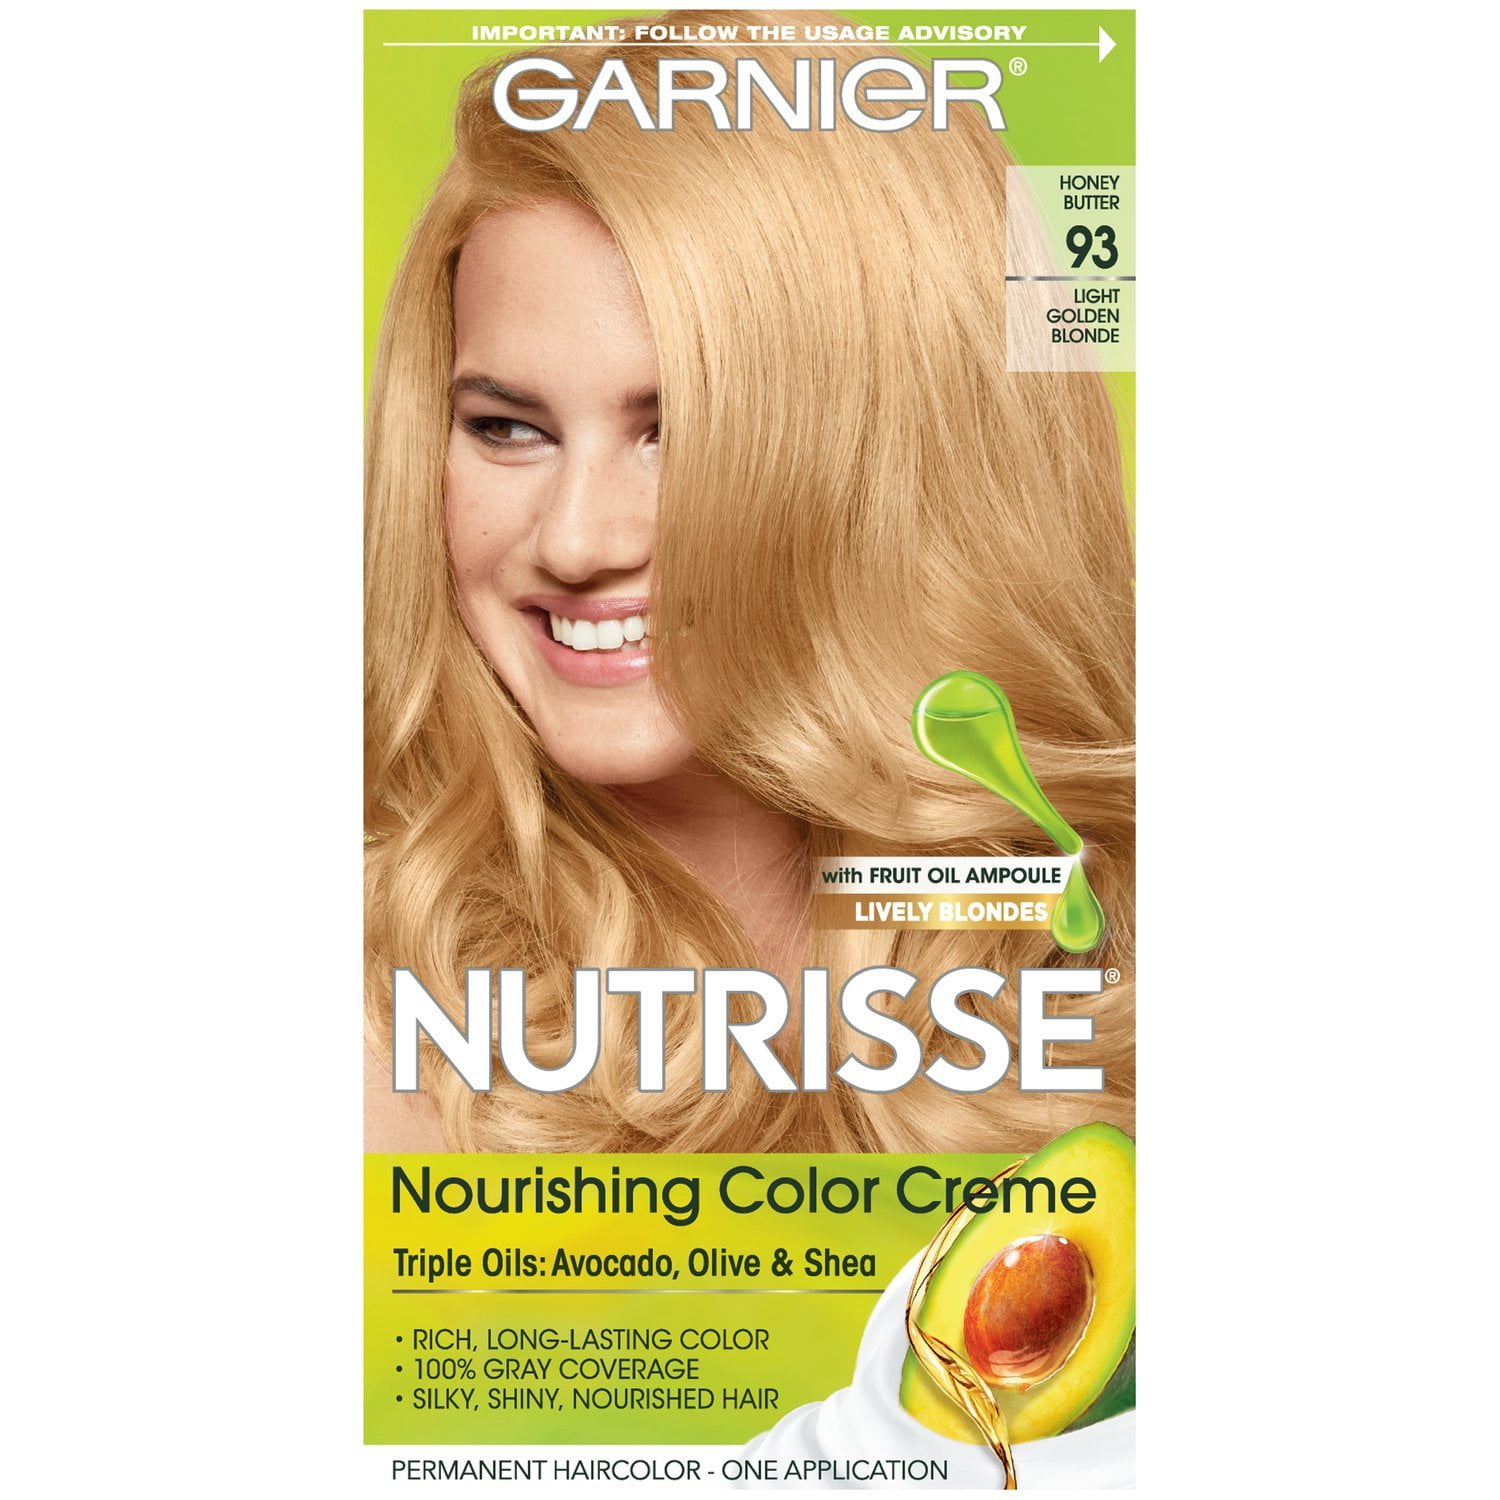 Garnier Nutrisse Nourishing Hair Color Creme, 93 Light Golden Blonde ...